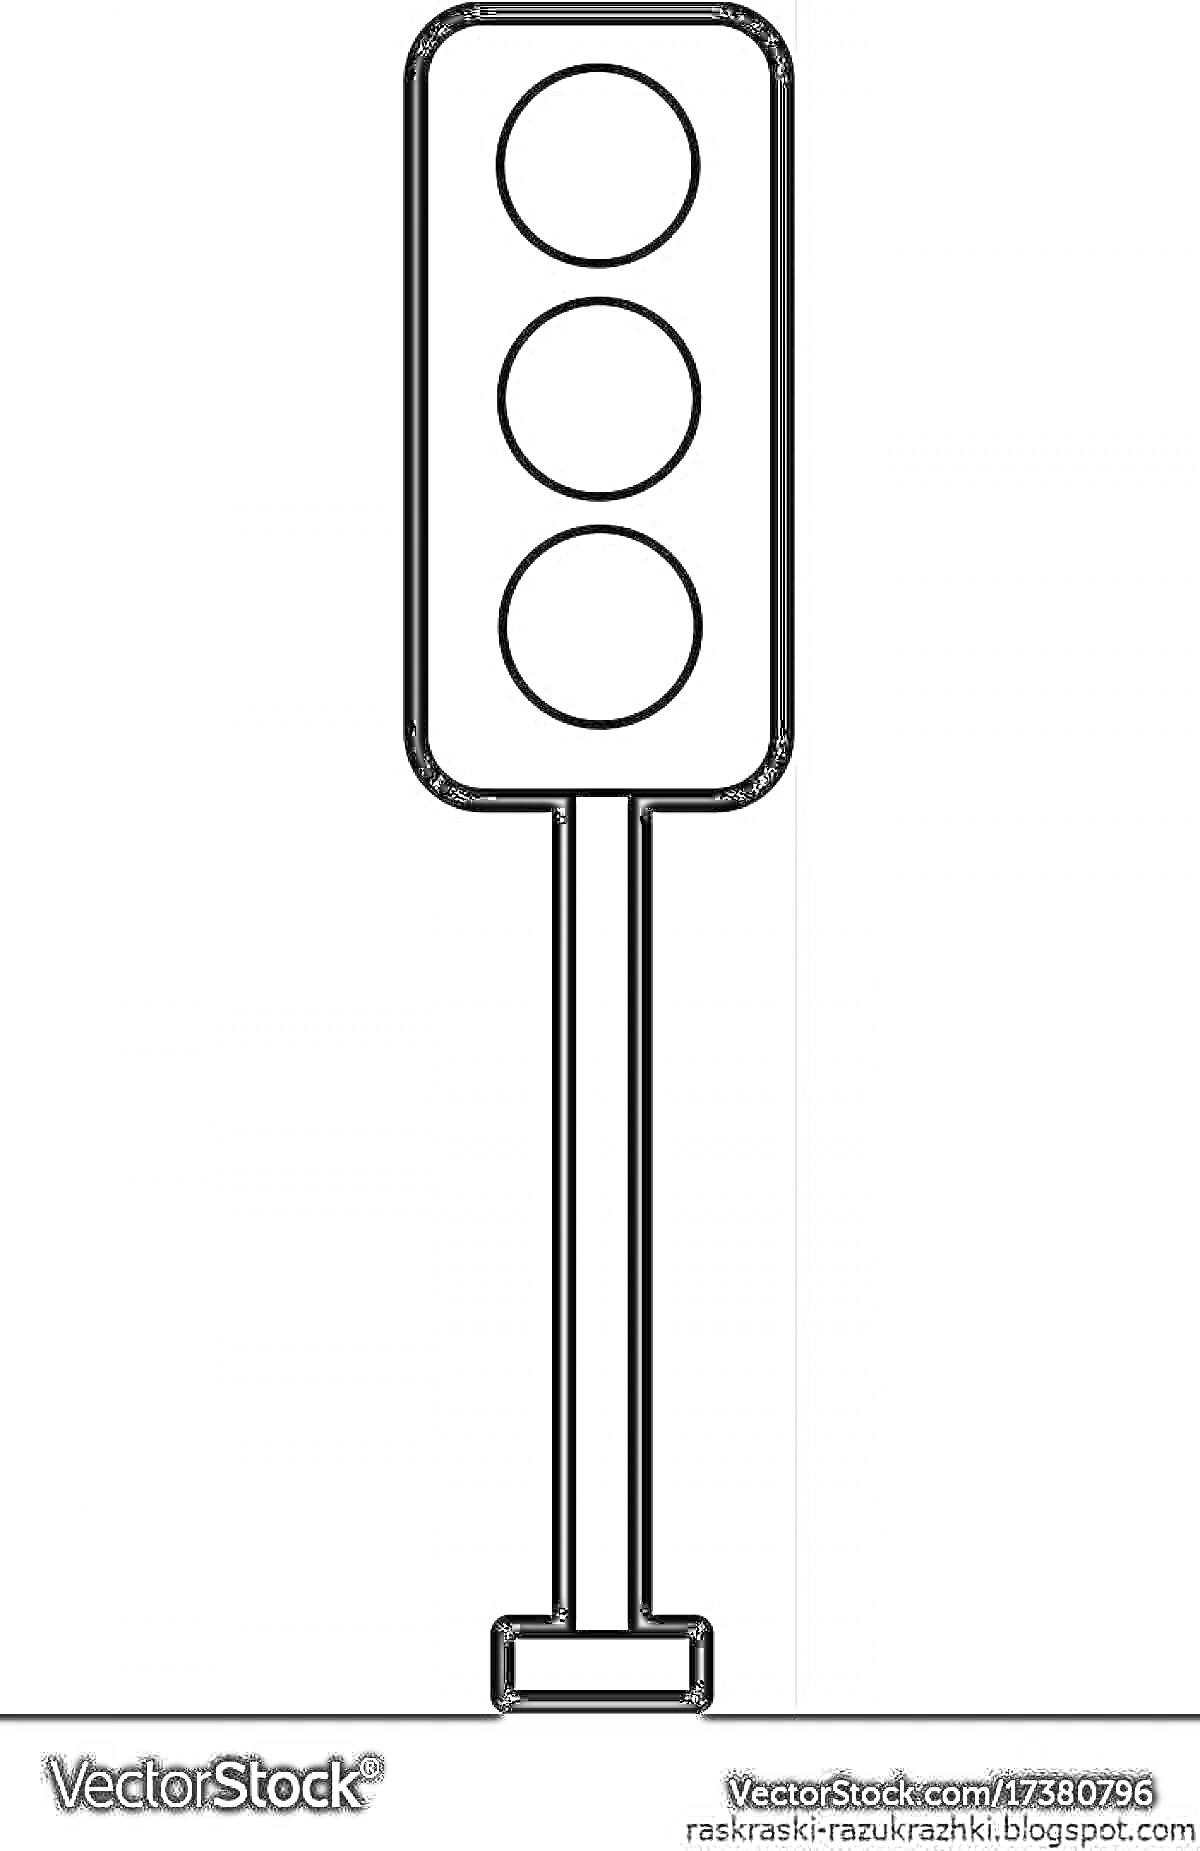 Раскраска Светофор с тремя круглыми сигналами на столбе